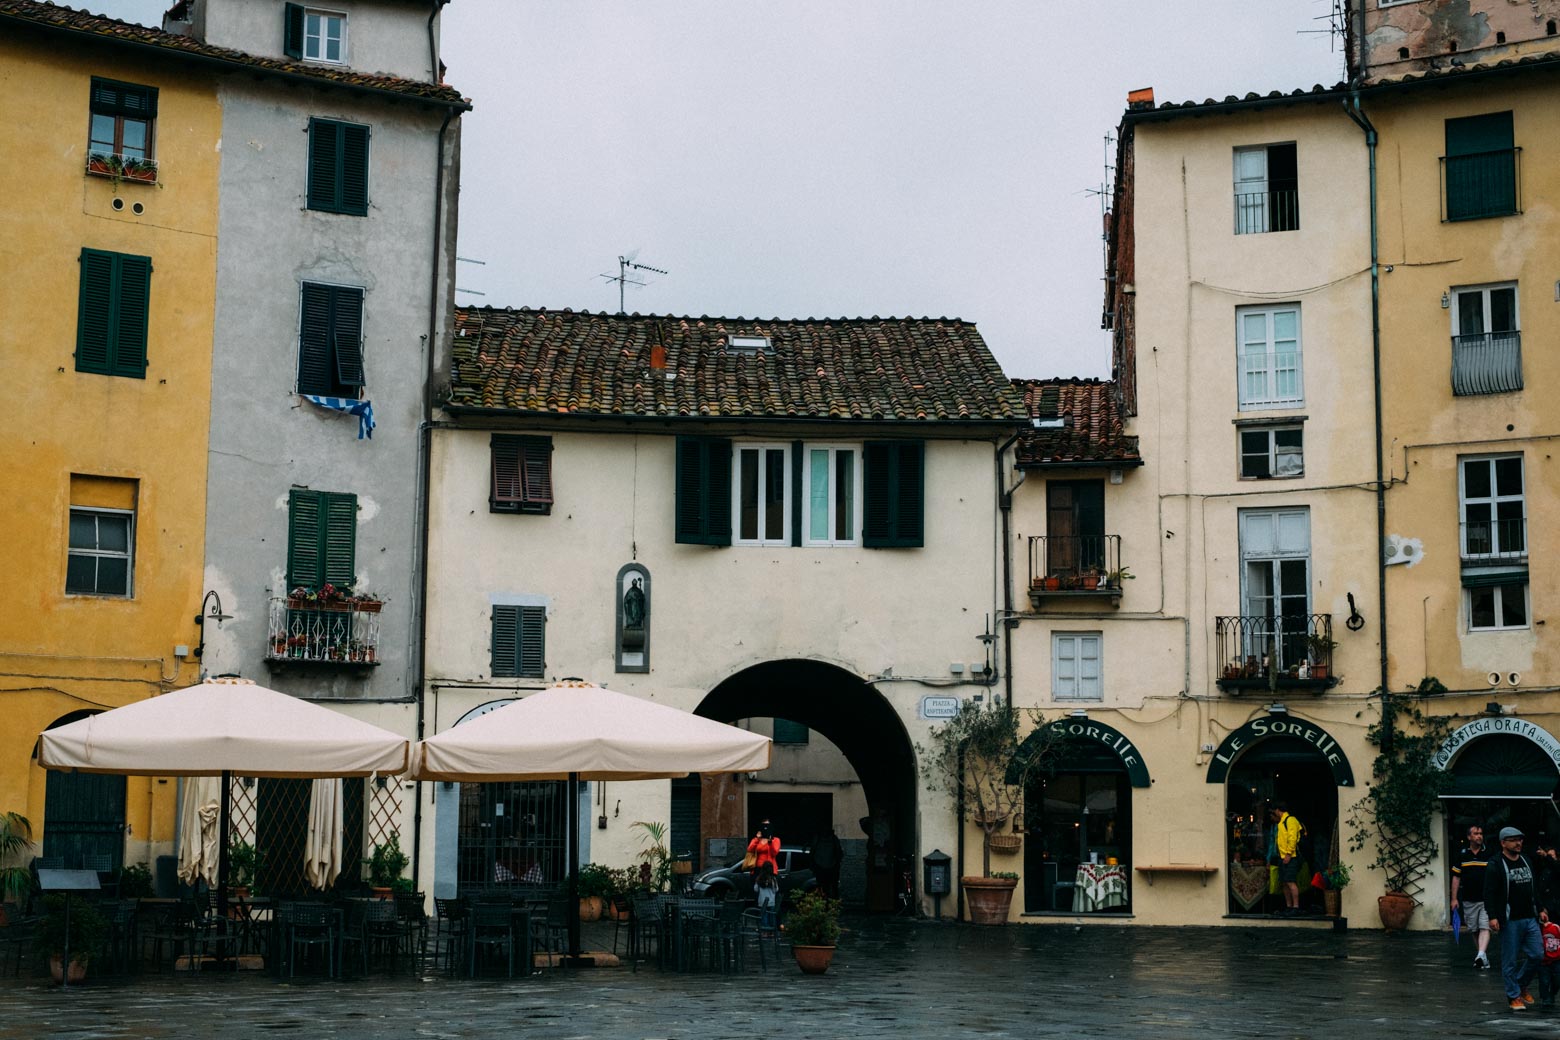 Piazza dell' Anfiteatro in Lucca